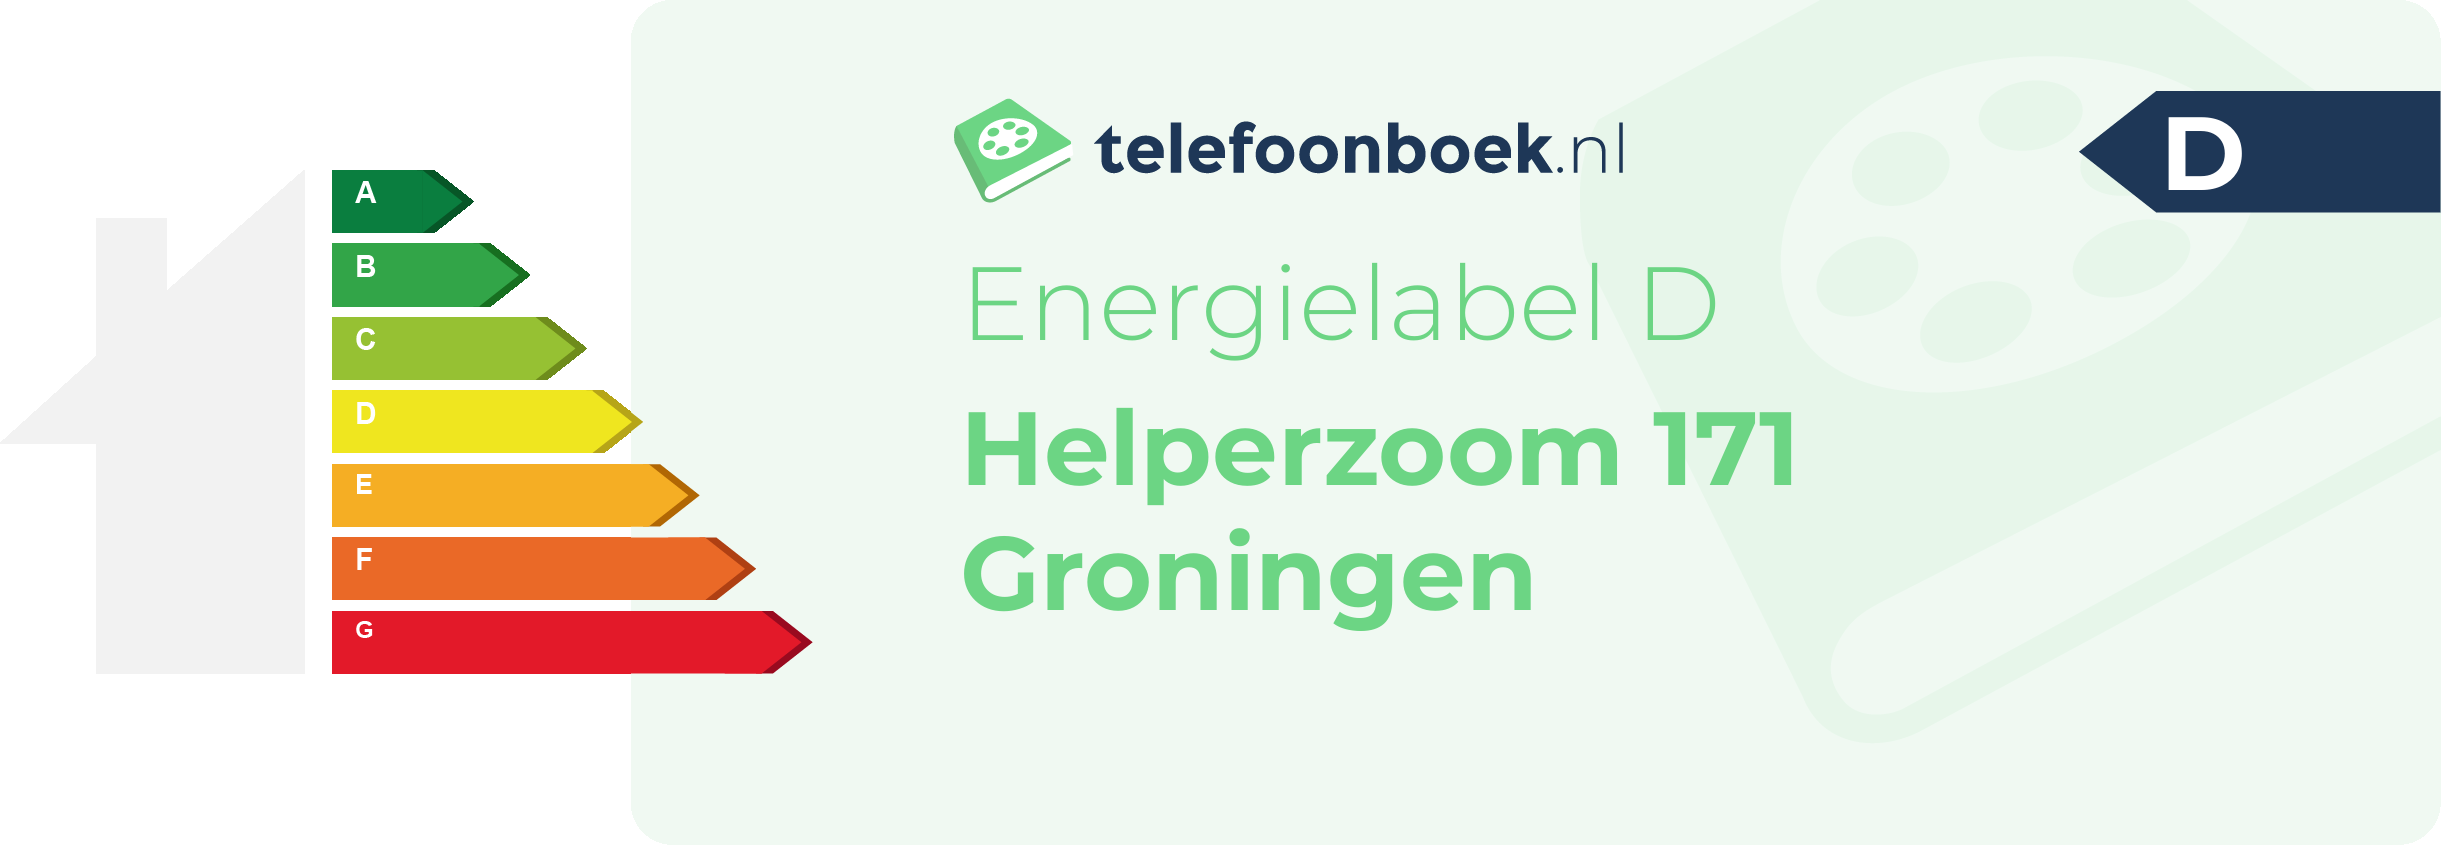 Energielabel Helperzoom 171 Groningen